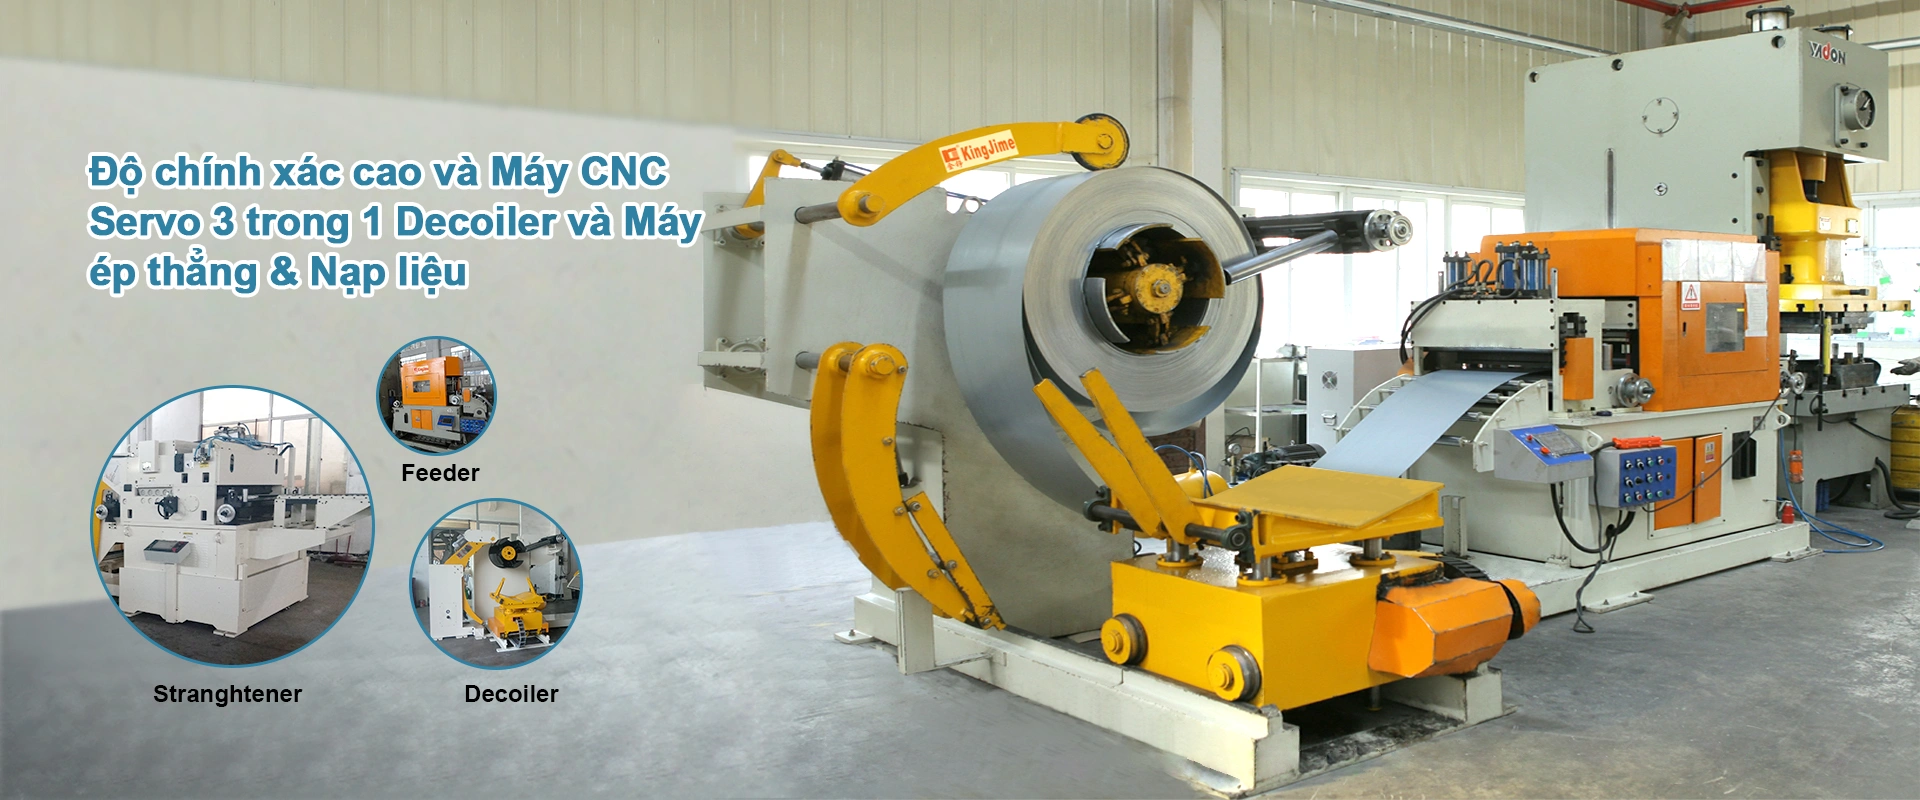 Độ chính xác cao và Máy CNC Servo 3 trong 1 Decoiler và Máy ép thẳng & Nạp liệu